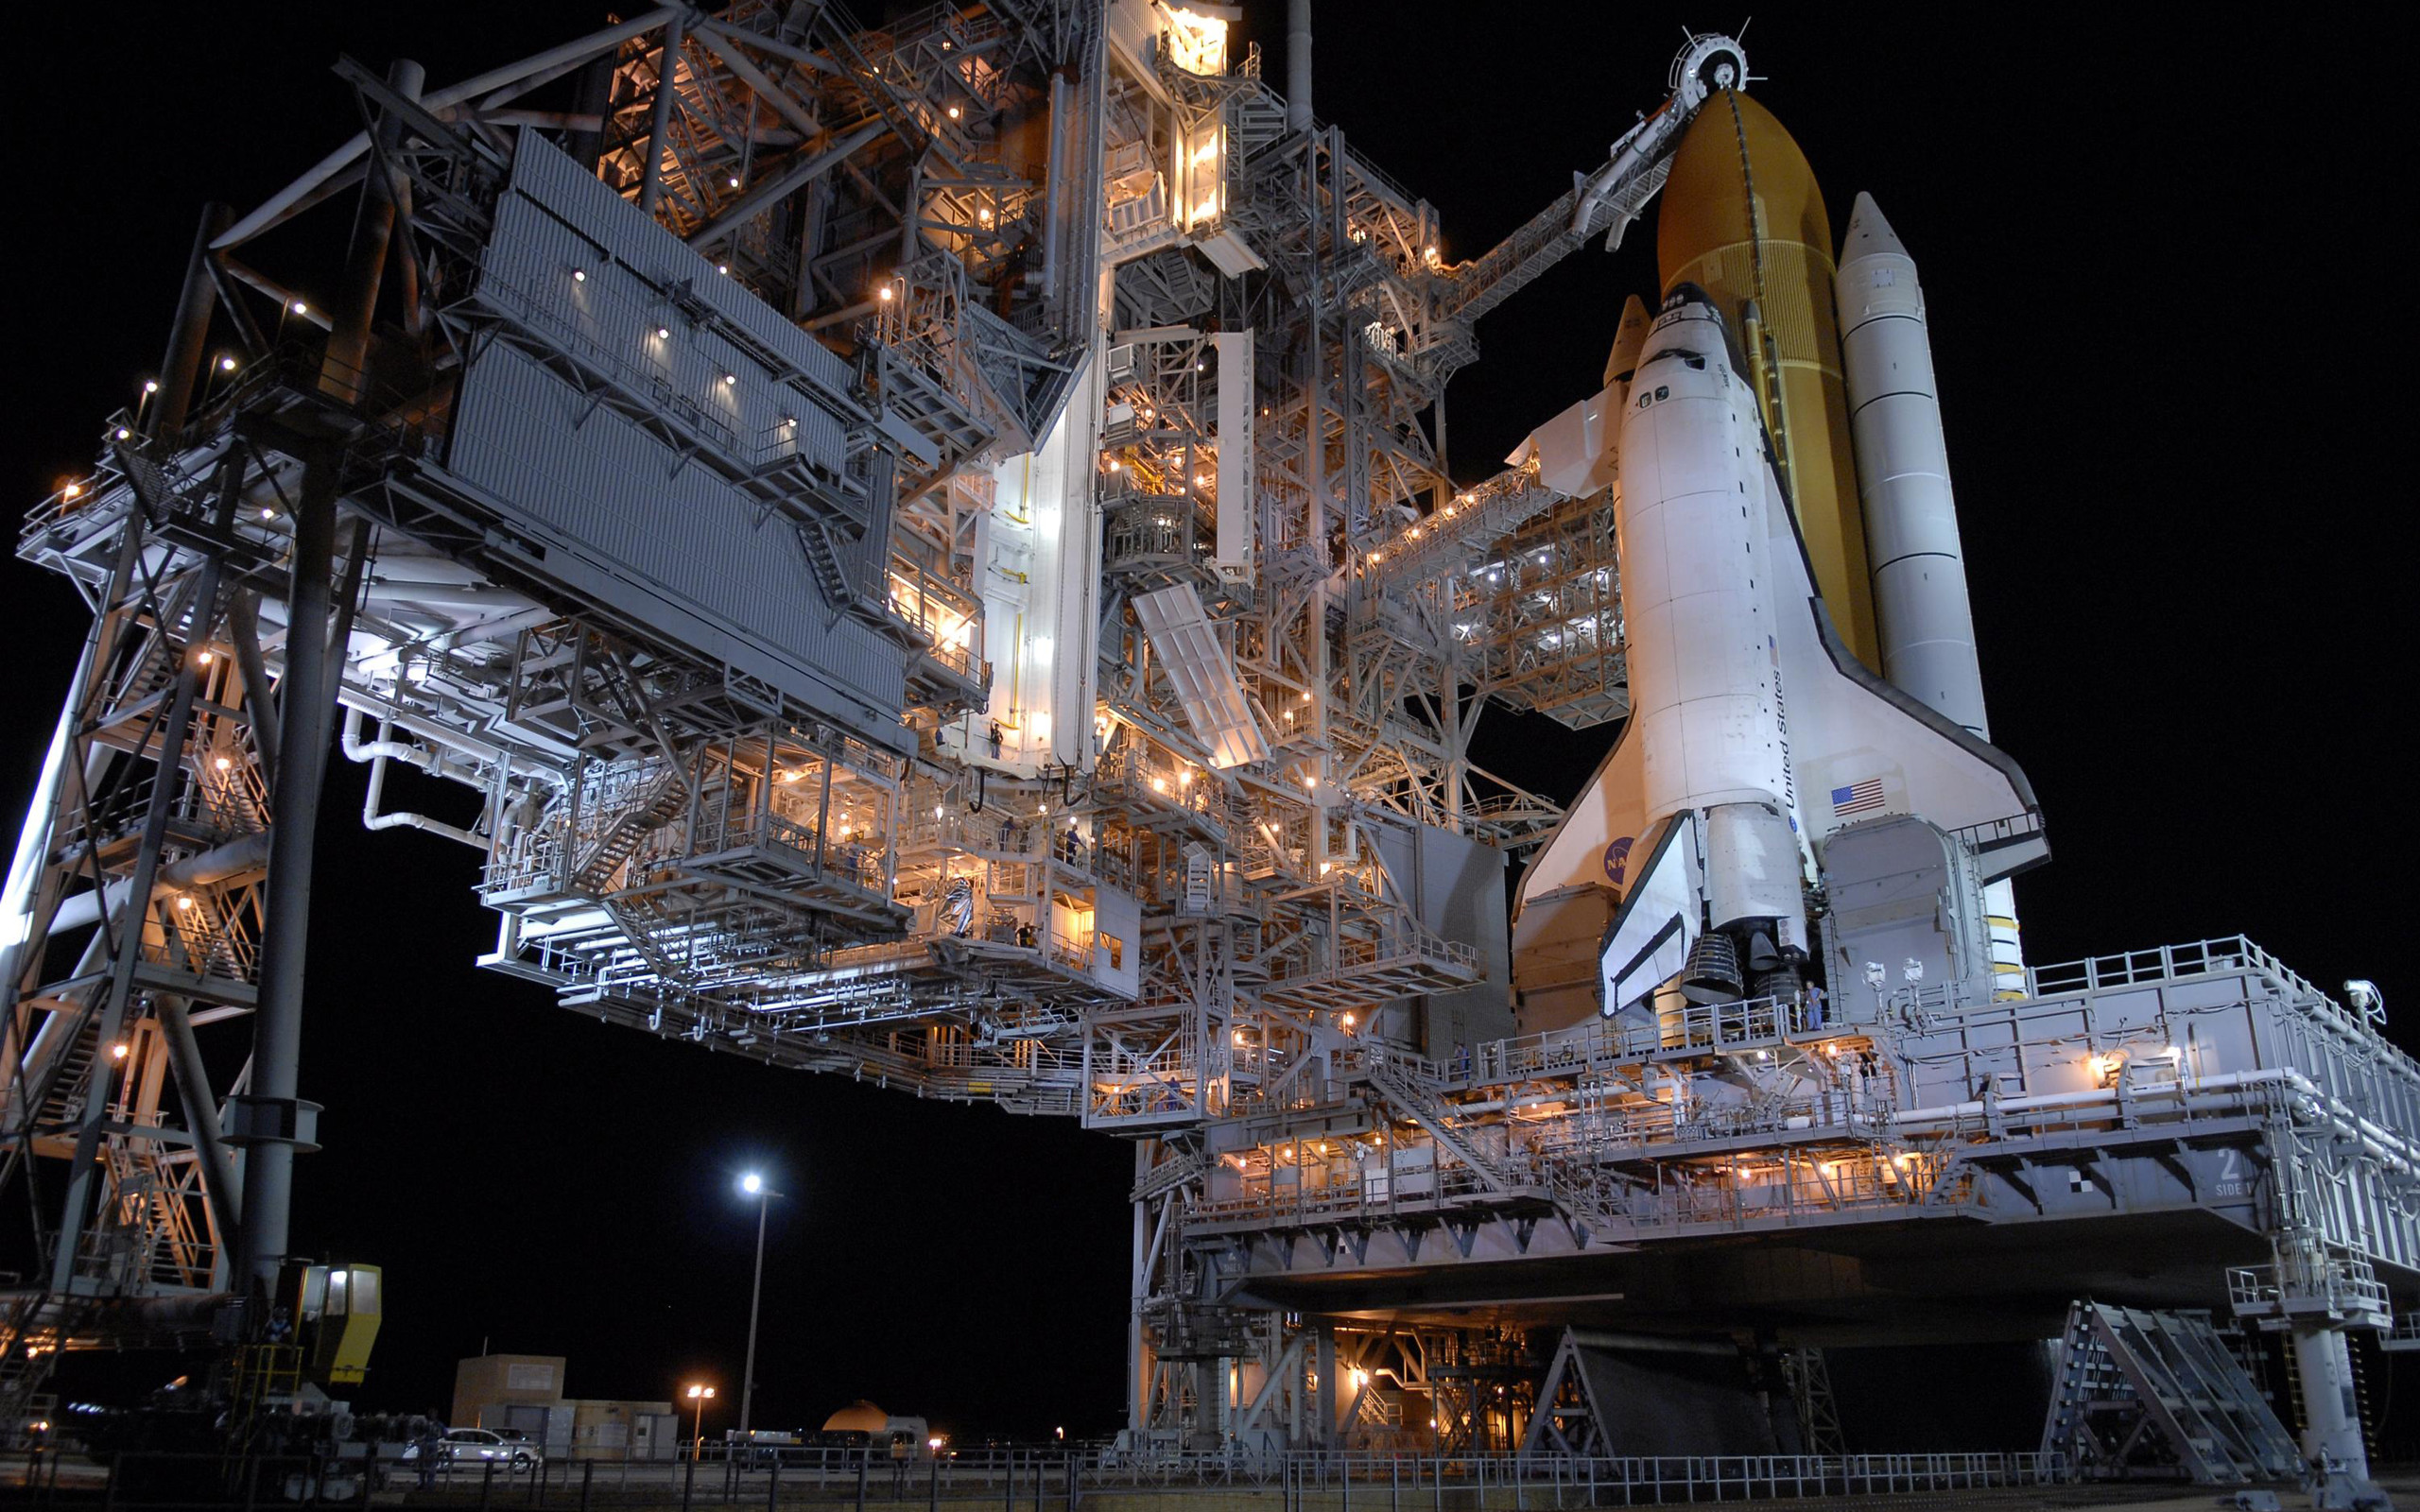 2560x1600 Space Shuttle - Launching Pad